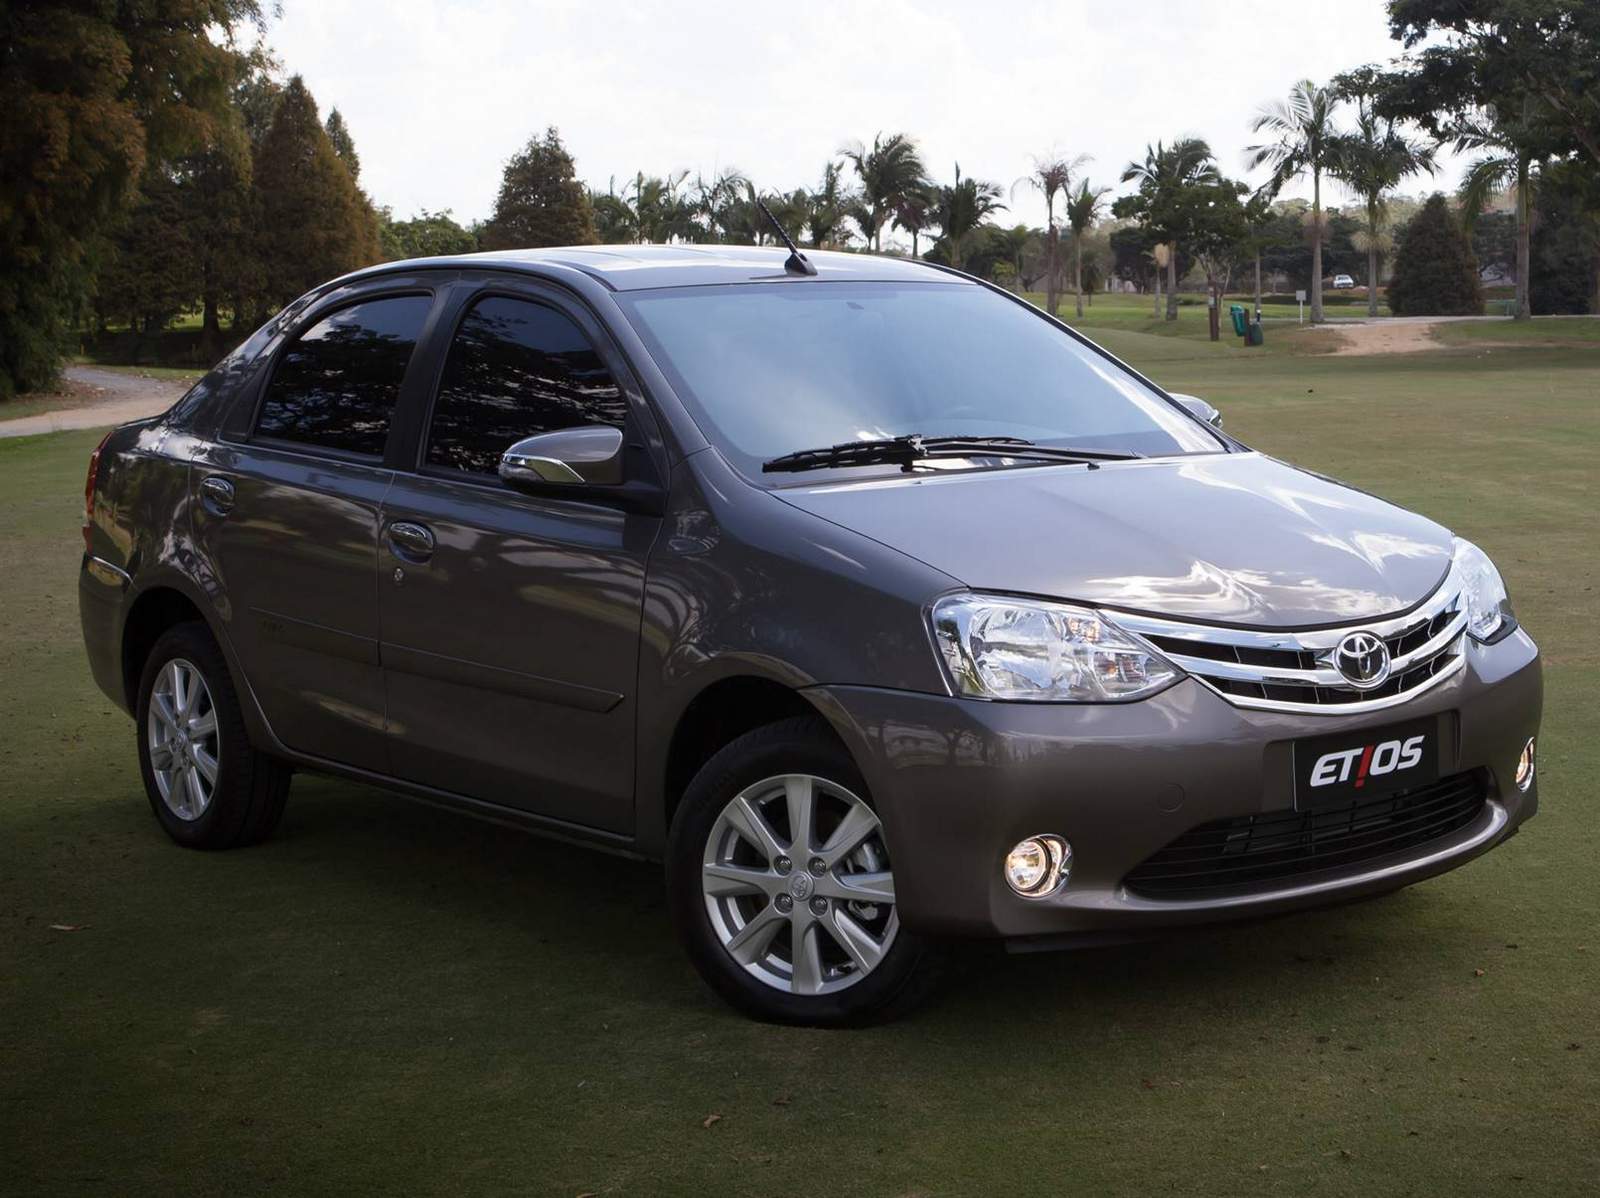 Toyota-Etios-Sedan-Automatico%2B%252814%2529.jpg